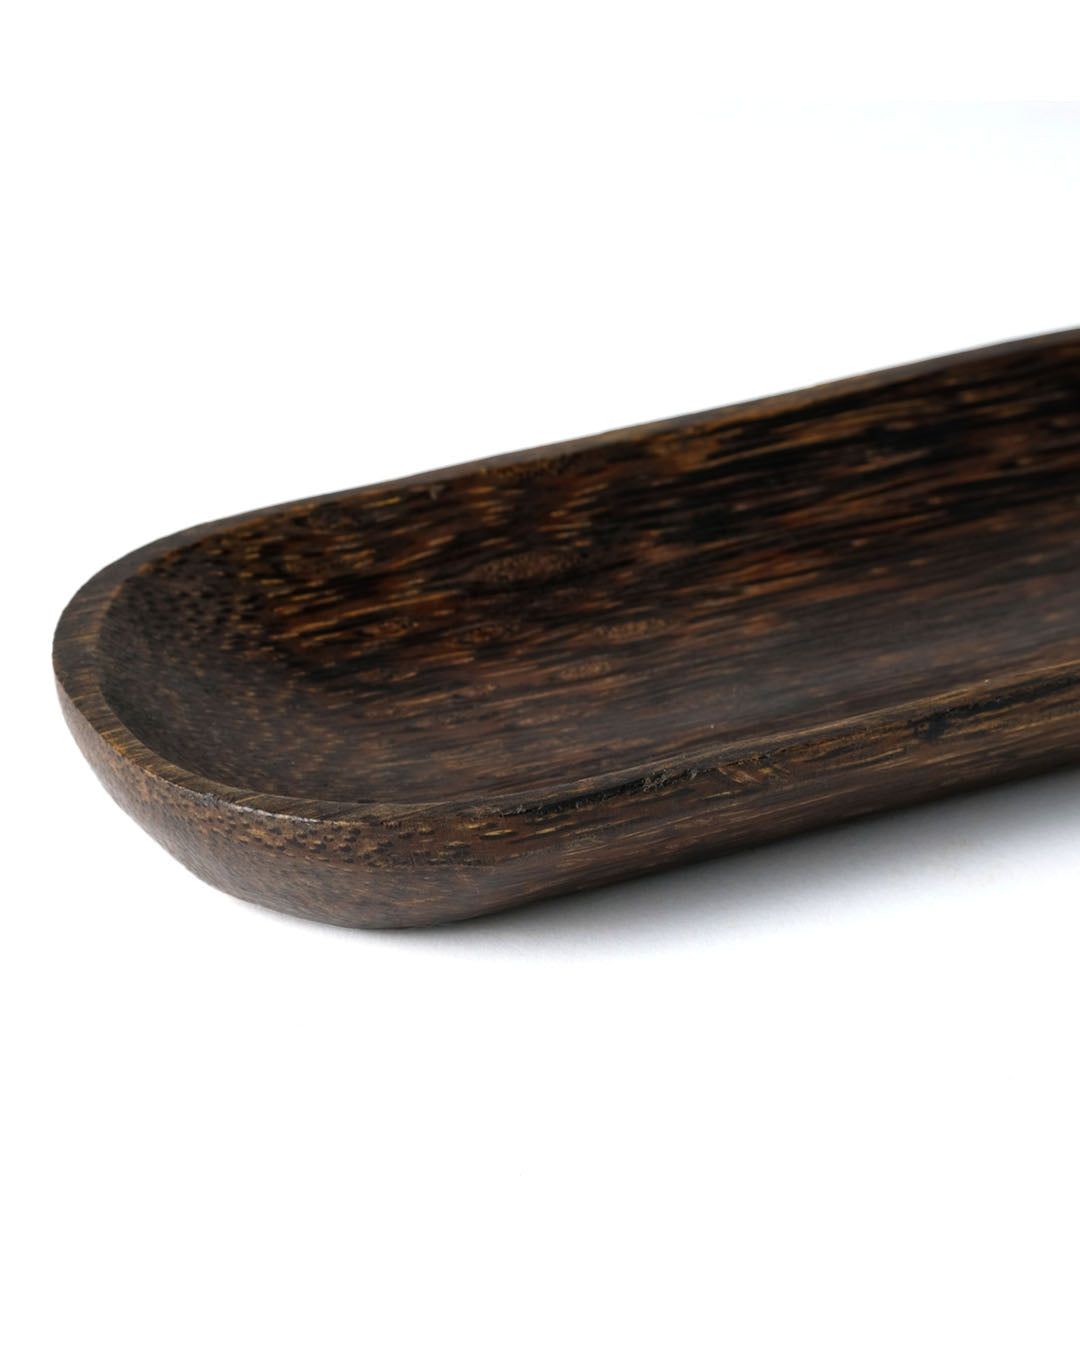 Plato de servir de madera de palmera oval Nabire, hecho a mano por artesanos indonesios, altura 2,5 cm largo 40 cm profundidad 8,5 cm.